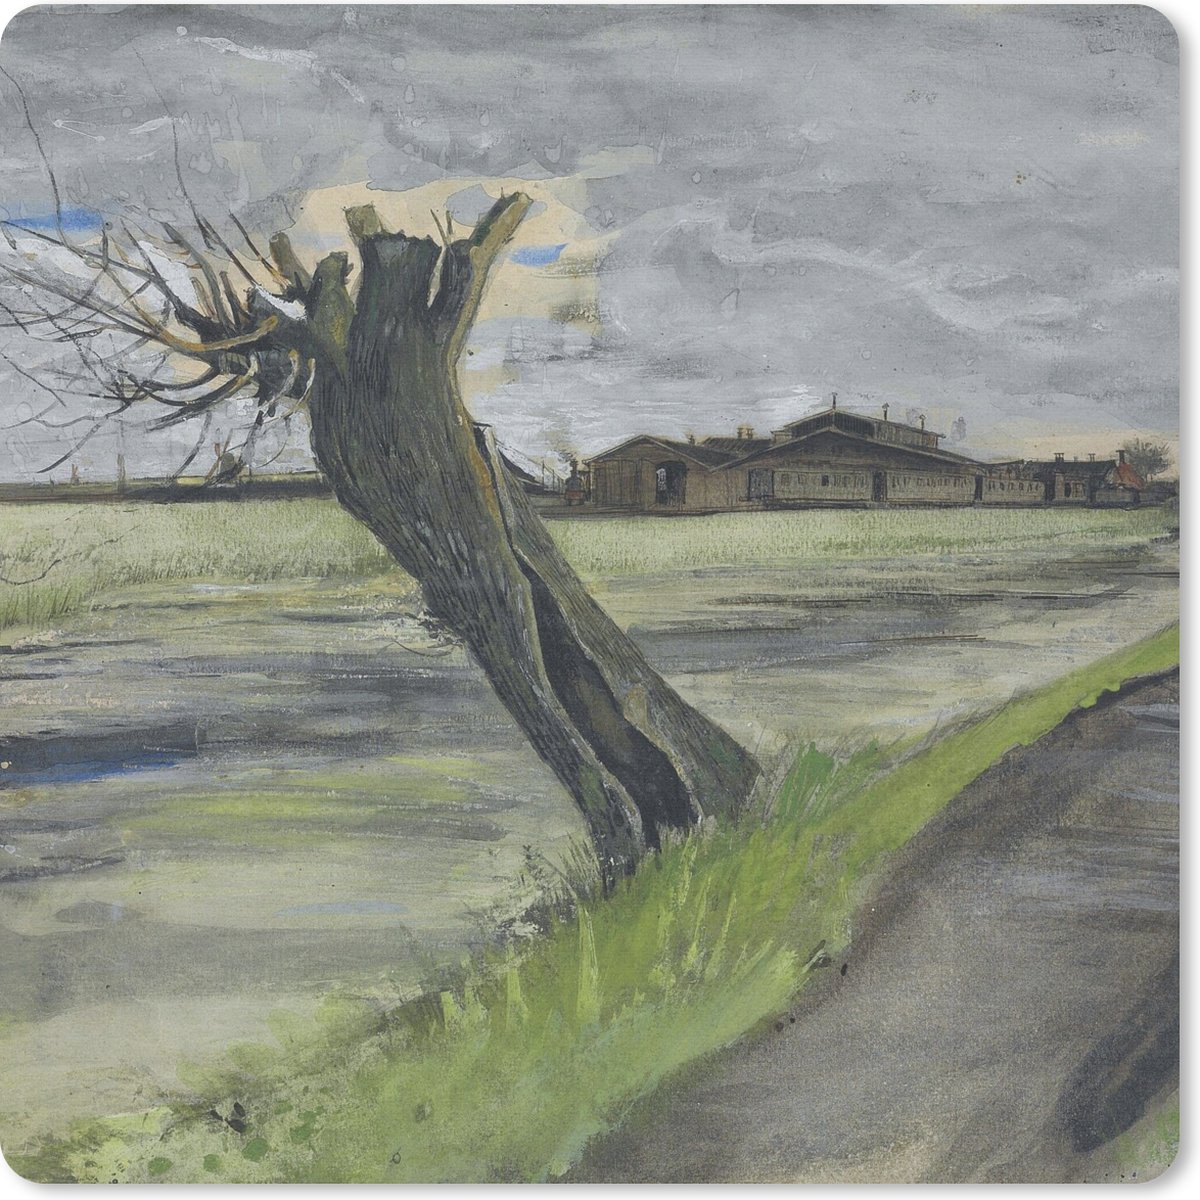 Muismat - Mousepad - Knotwilg - Vincent van Gogh - 30x30 cm - Muismatten